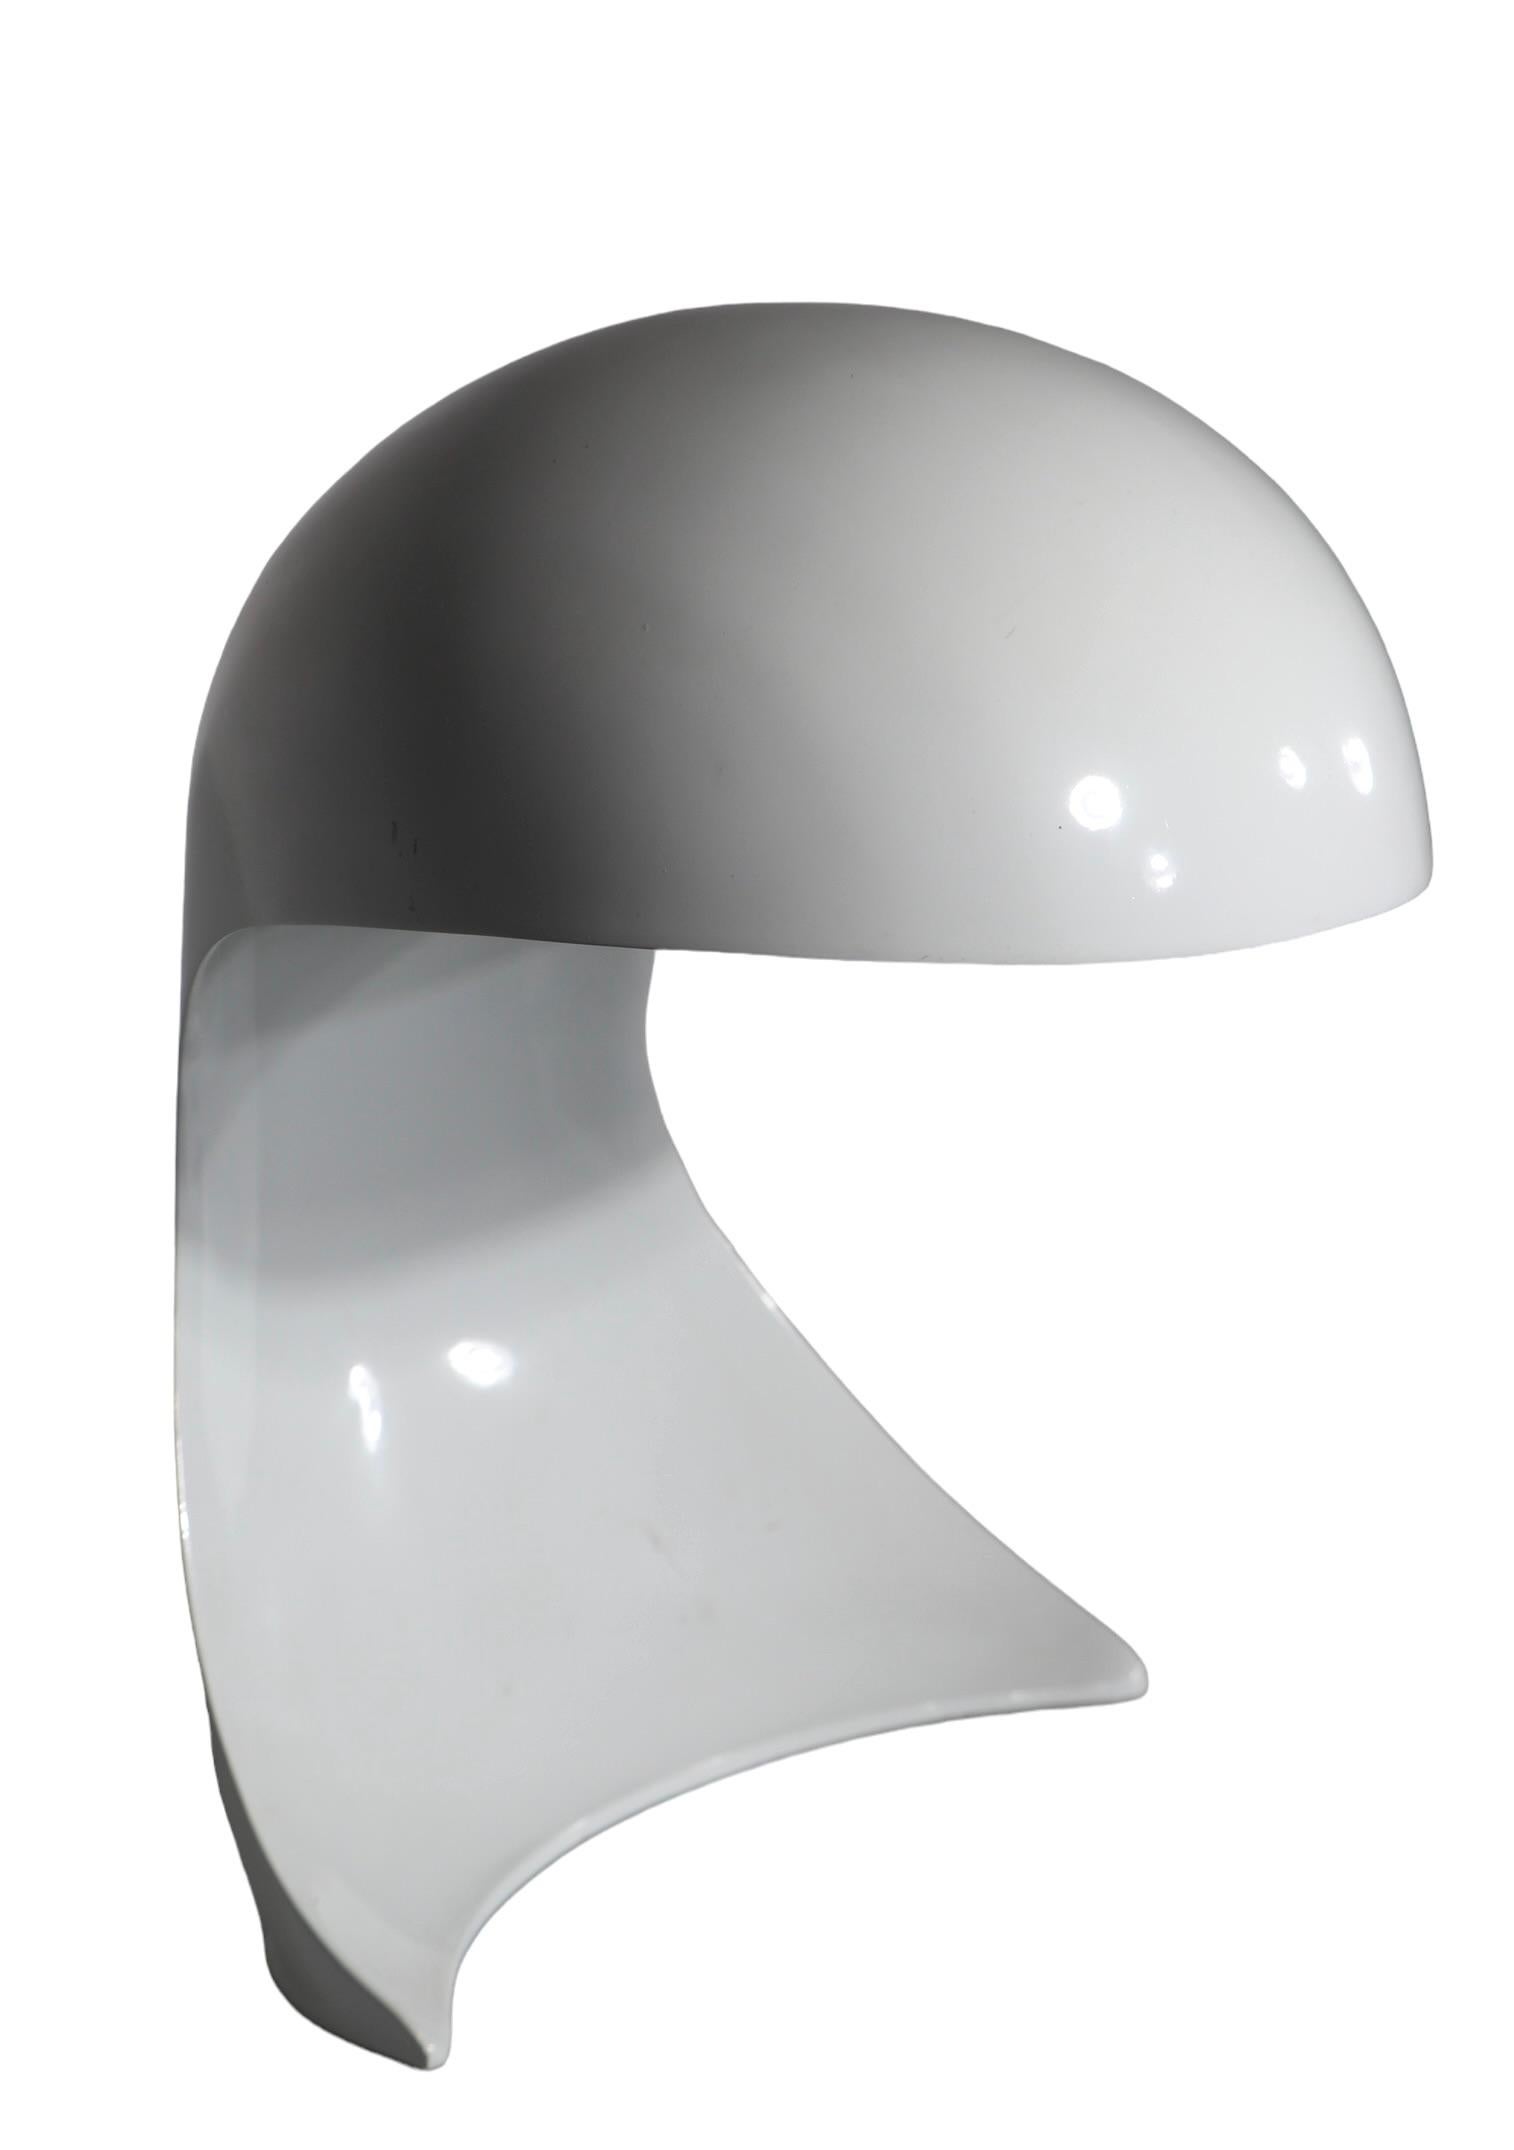 Lampe de table classique post-moderne Dania, conçue par Dario Tognon pour Artemide, fabriquée en Italie vers les années 1960.
La lampe présente une structure métallique blanche en finition d'origine, elle est actuellement câblée pour une application